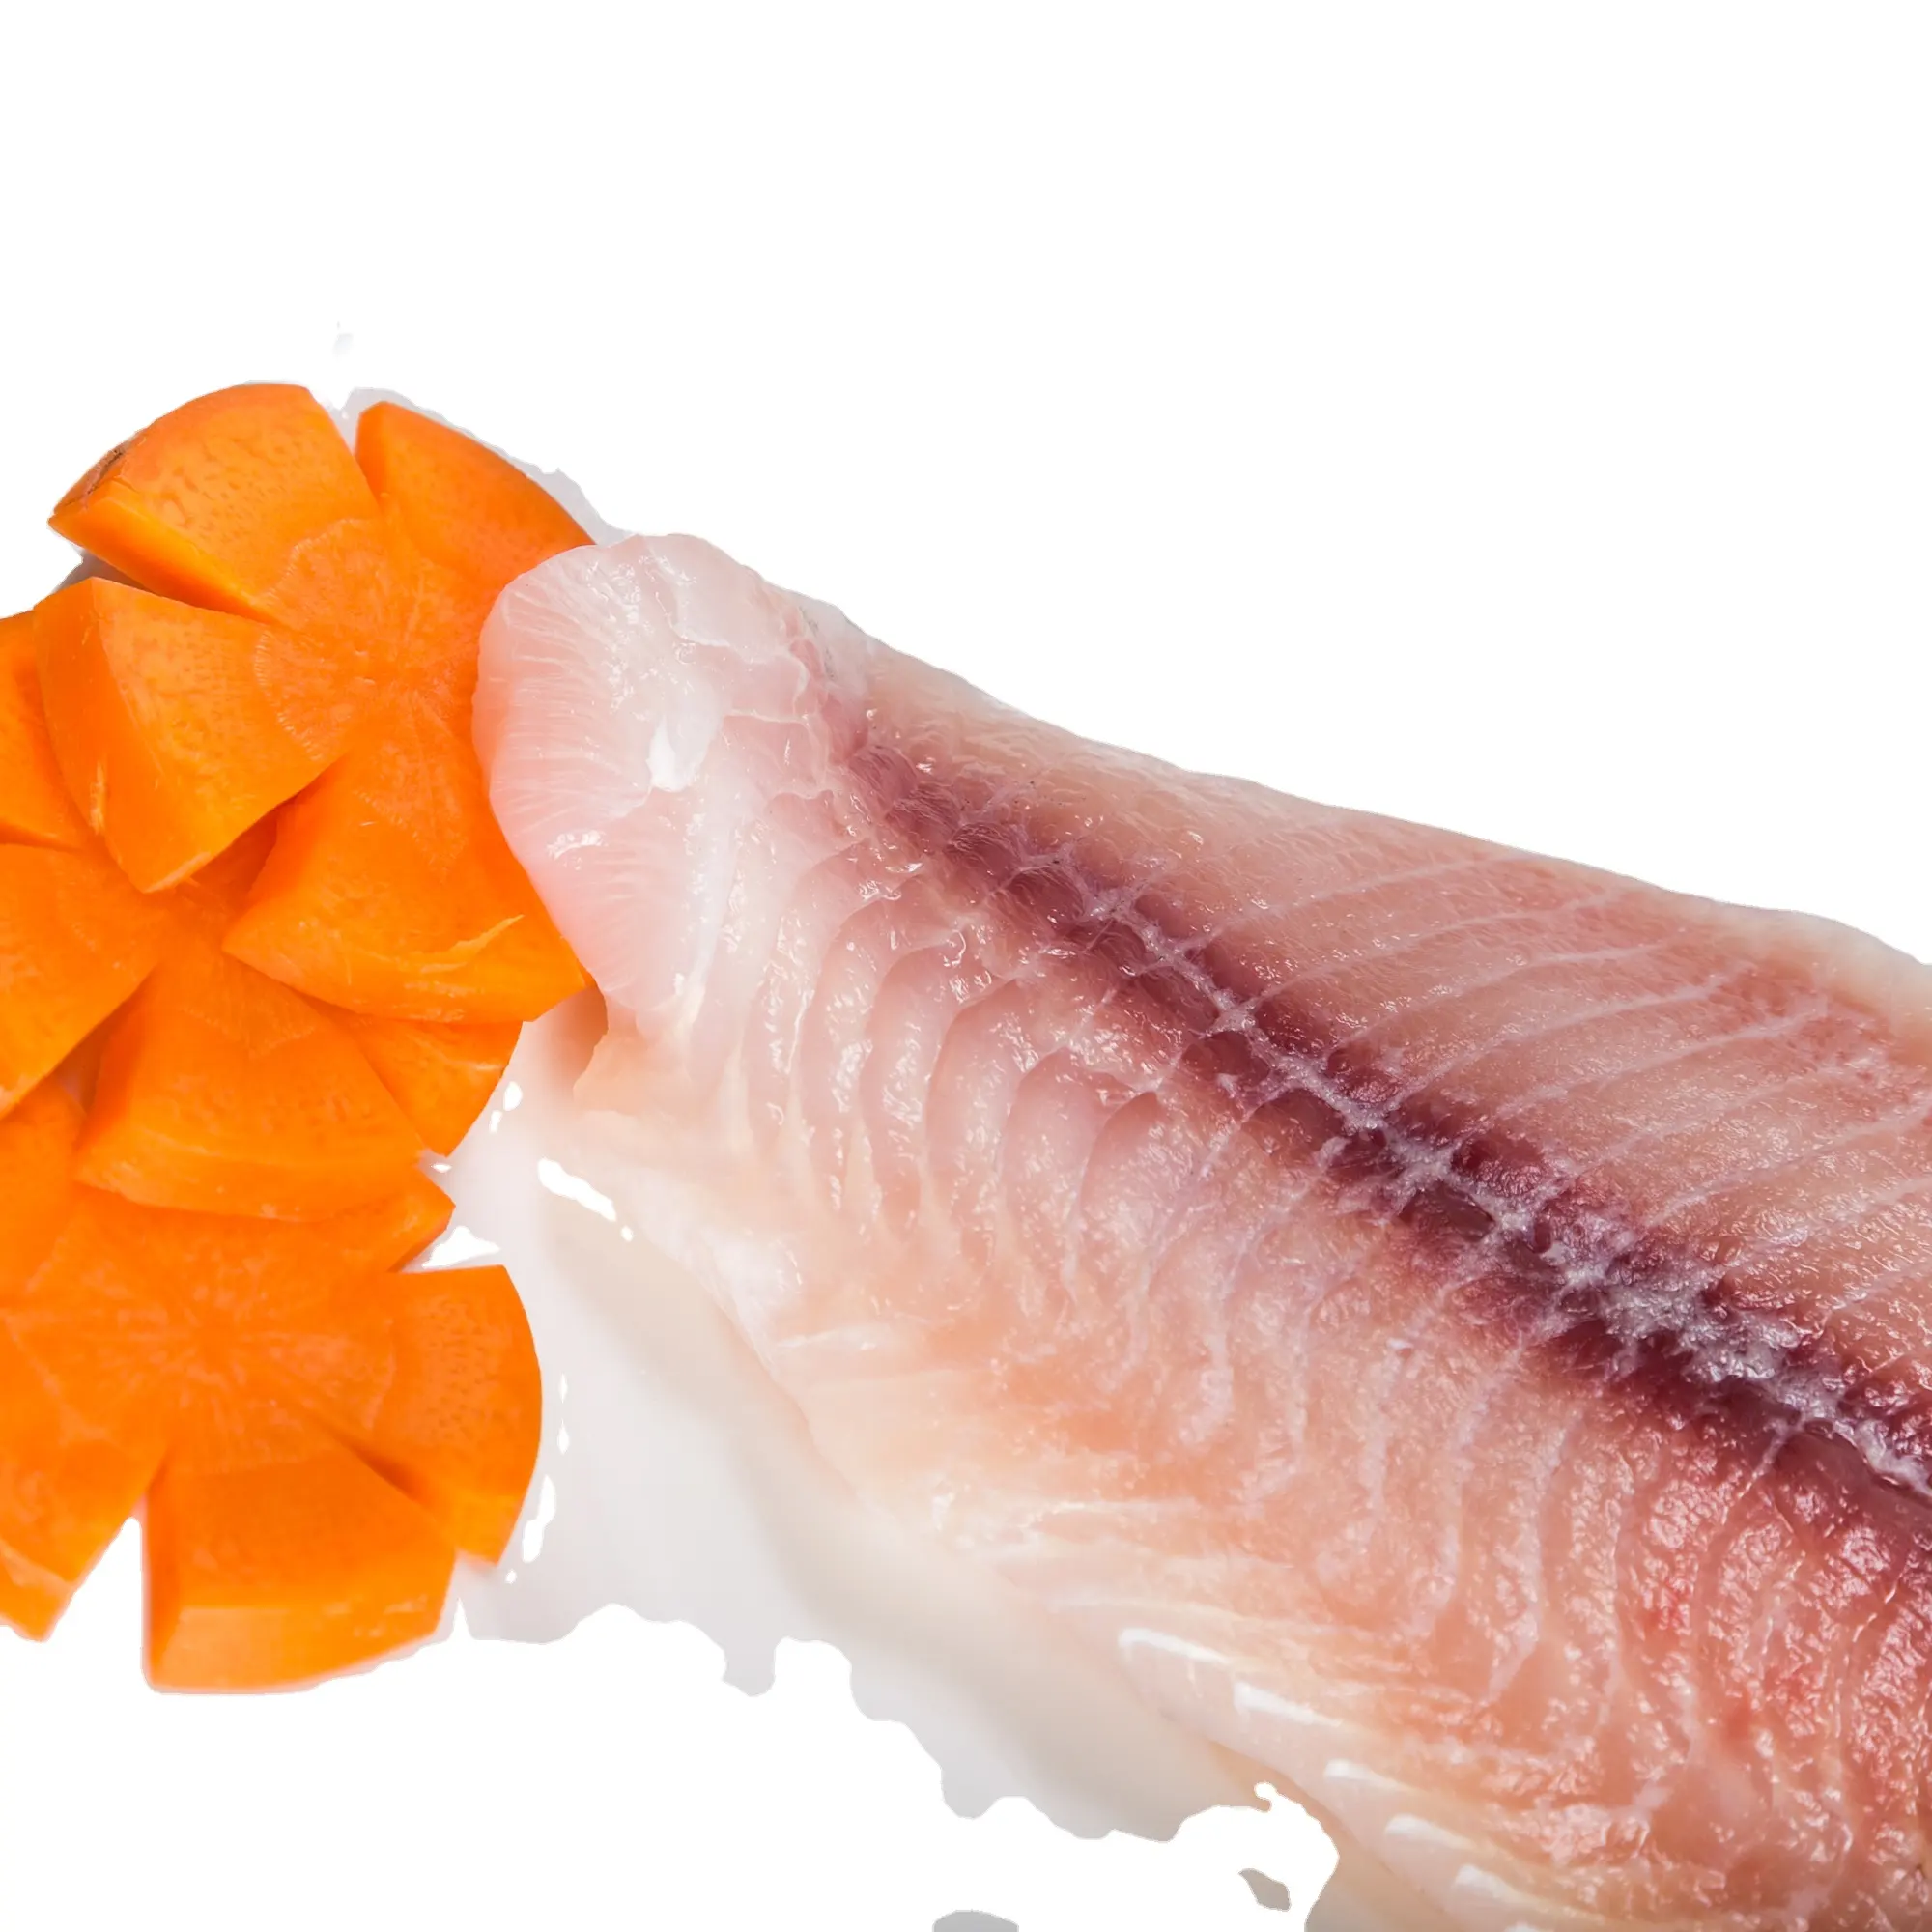 Harga Murah Kelas Frozen Ikan Ikan Fillet Semi Tipe Belly Off Lemak dengan Berat 10Kg dari Vietnam